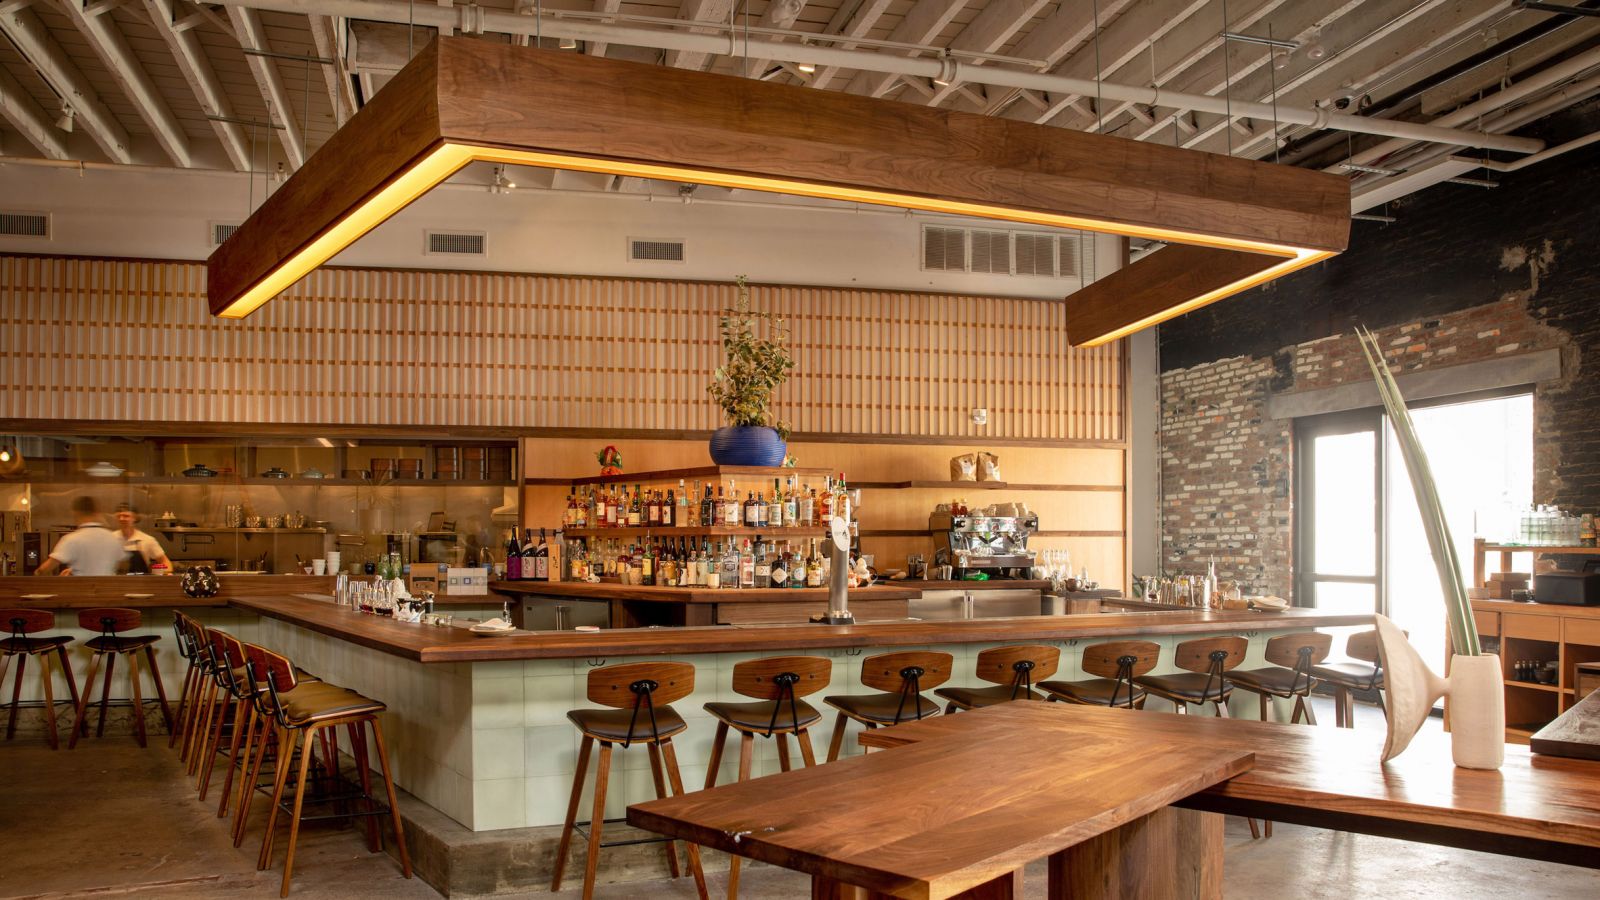 Nhà hàng sử dụng chất liệu gỗ đặc trưng của văn hóa Nhật